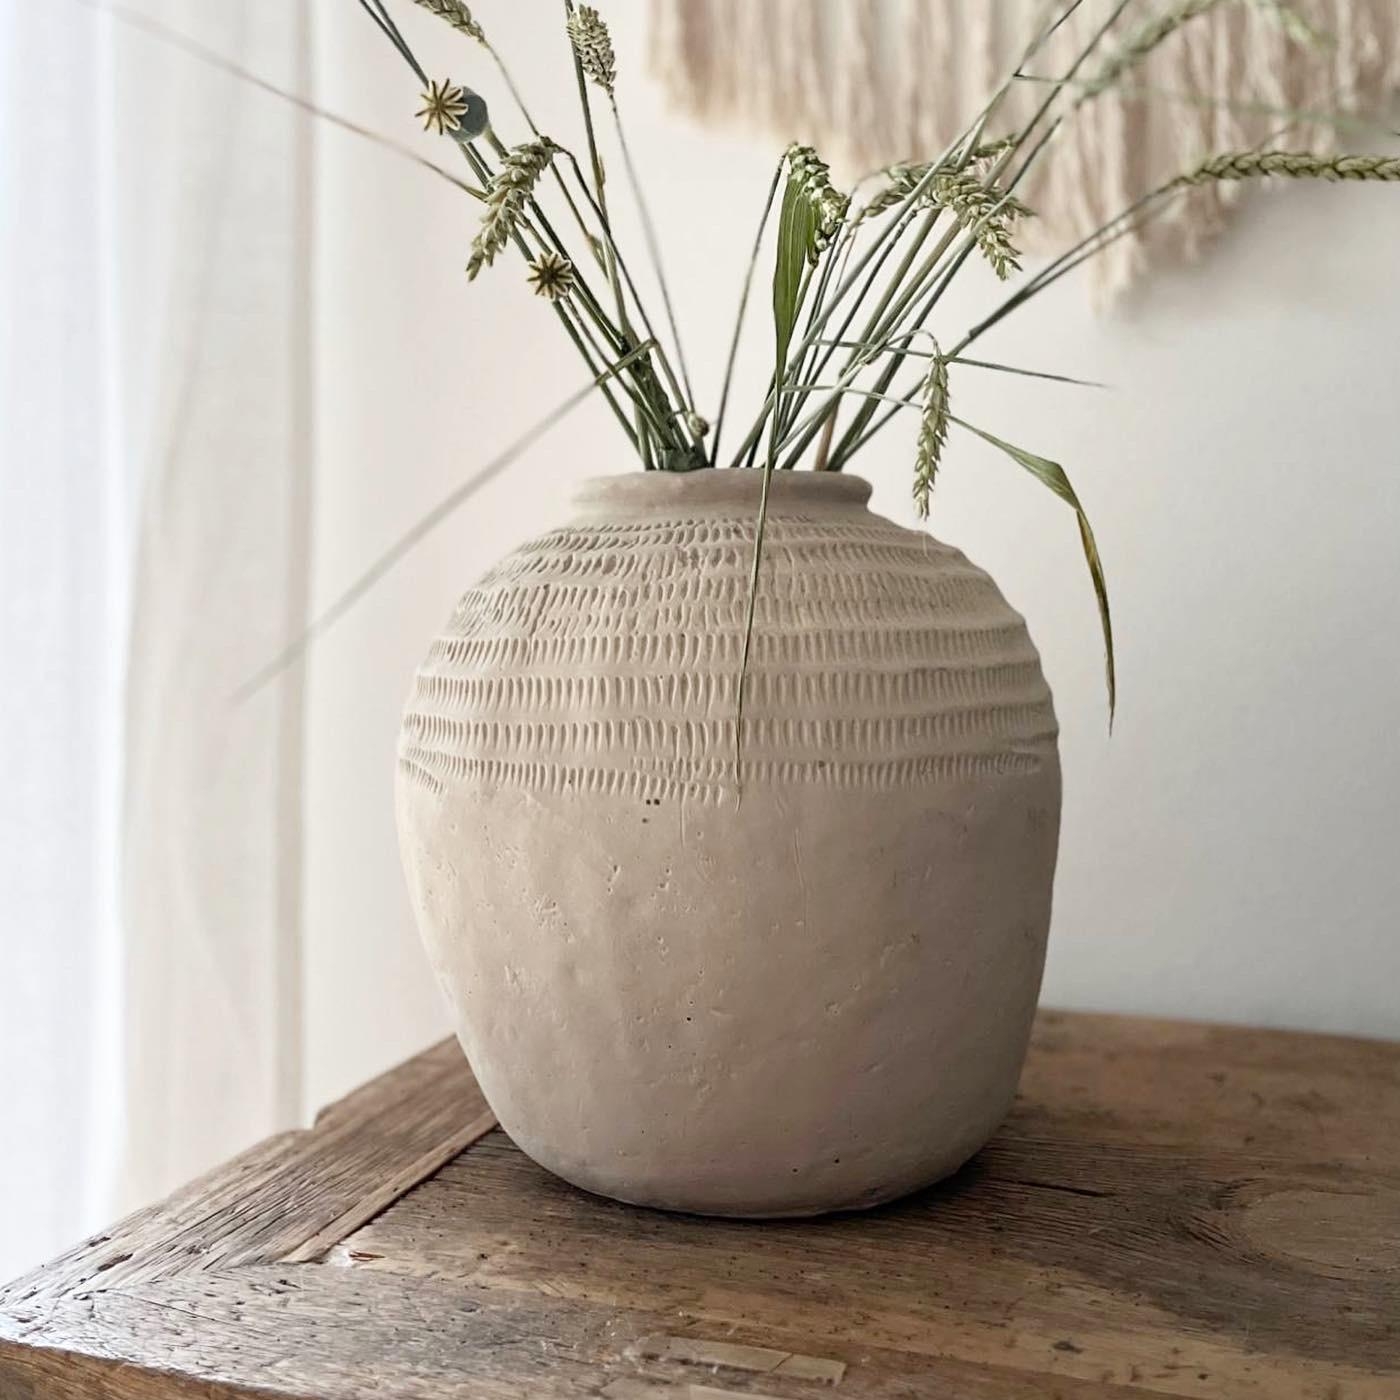 Ich liebe diese Töpfe 🤍
#vase #blumenliebe #driedflowers #handmade #unikat 